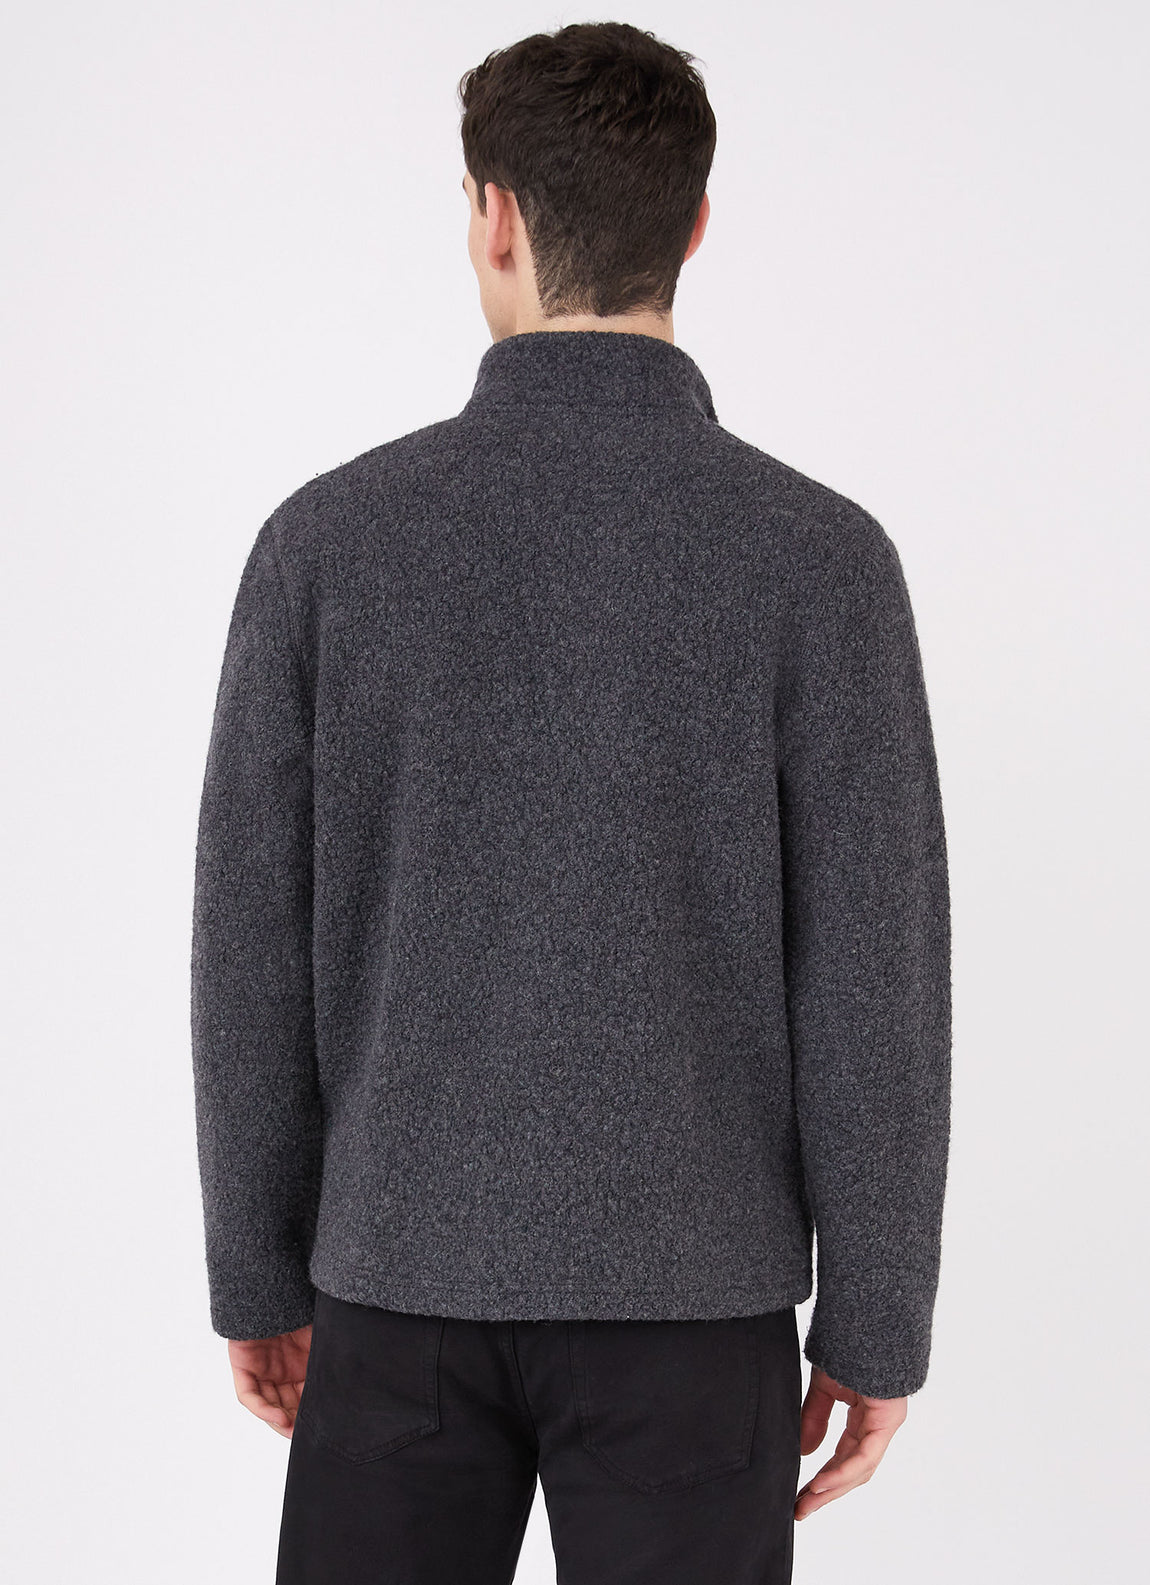 Men's Wool Fleece Jacket in Charcoal Melange